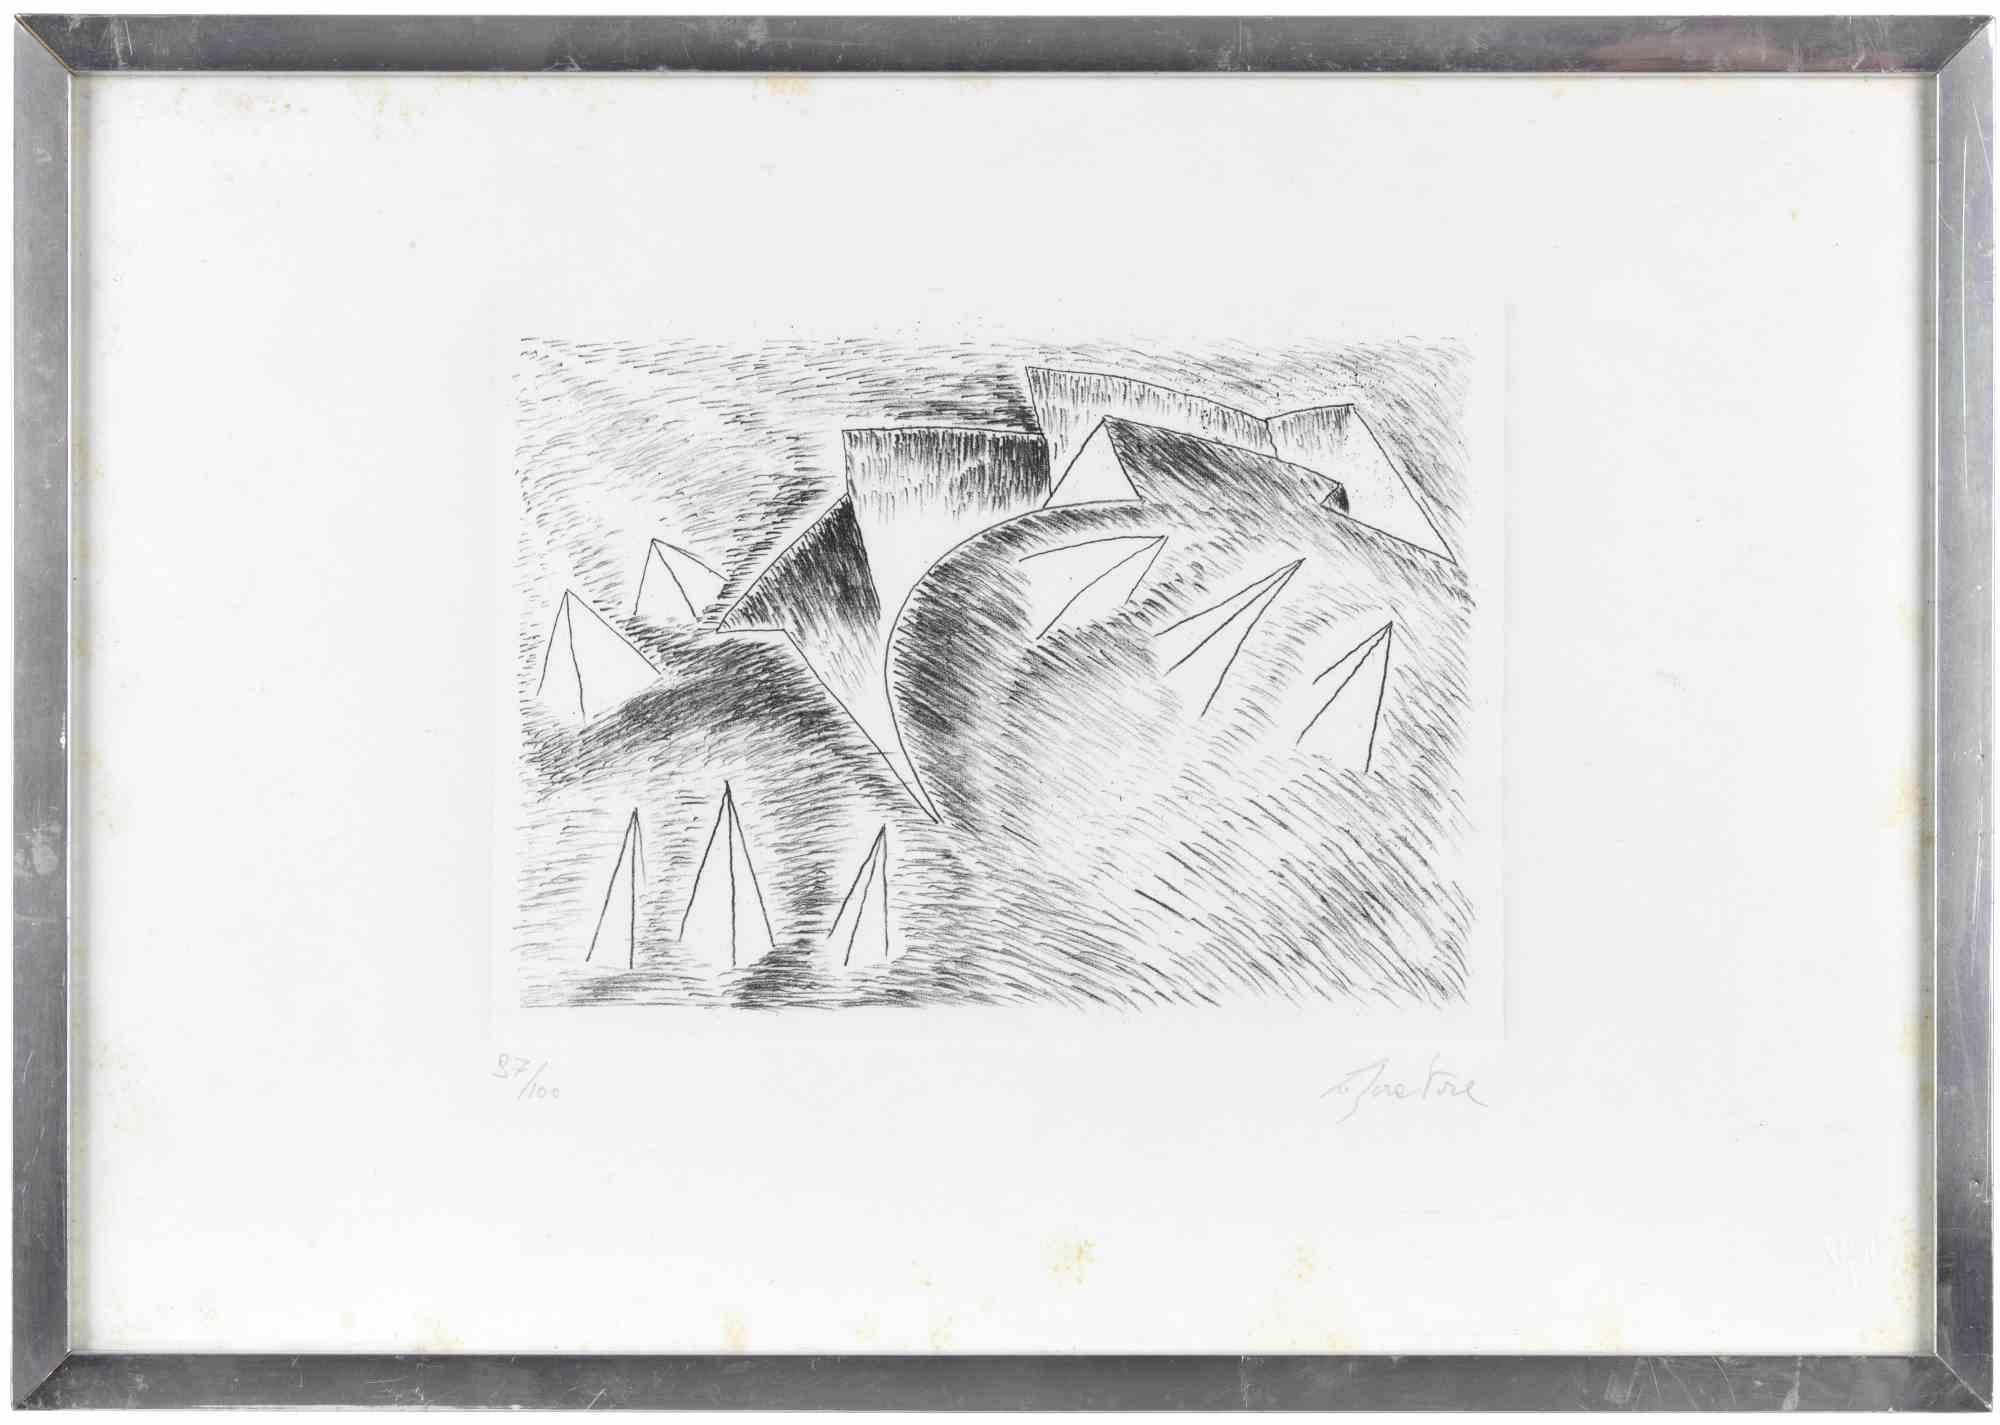 Sailing est une œuvre d'art contemporain réalisée par Bruno Liberatore.

Lithographie en noir et blanc.

Signé à la main et numéroté dans la marge inférieure.

Édition de 97/100.

Inclut le cadre.